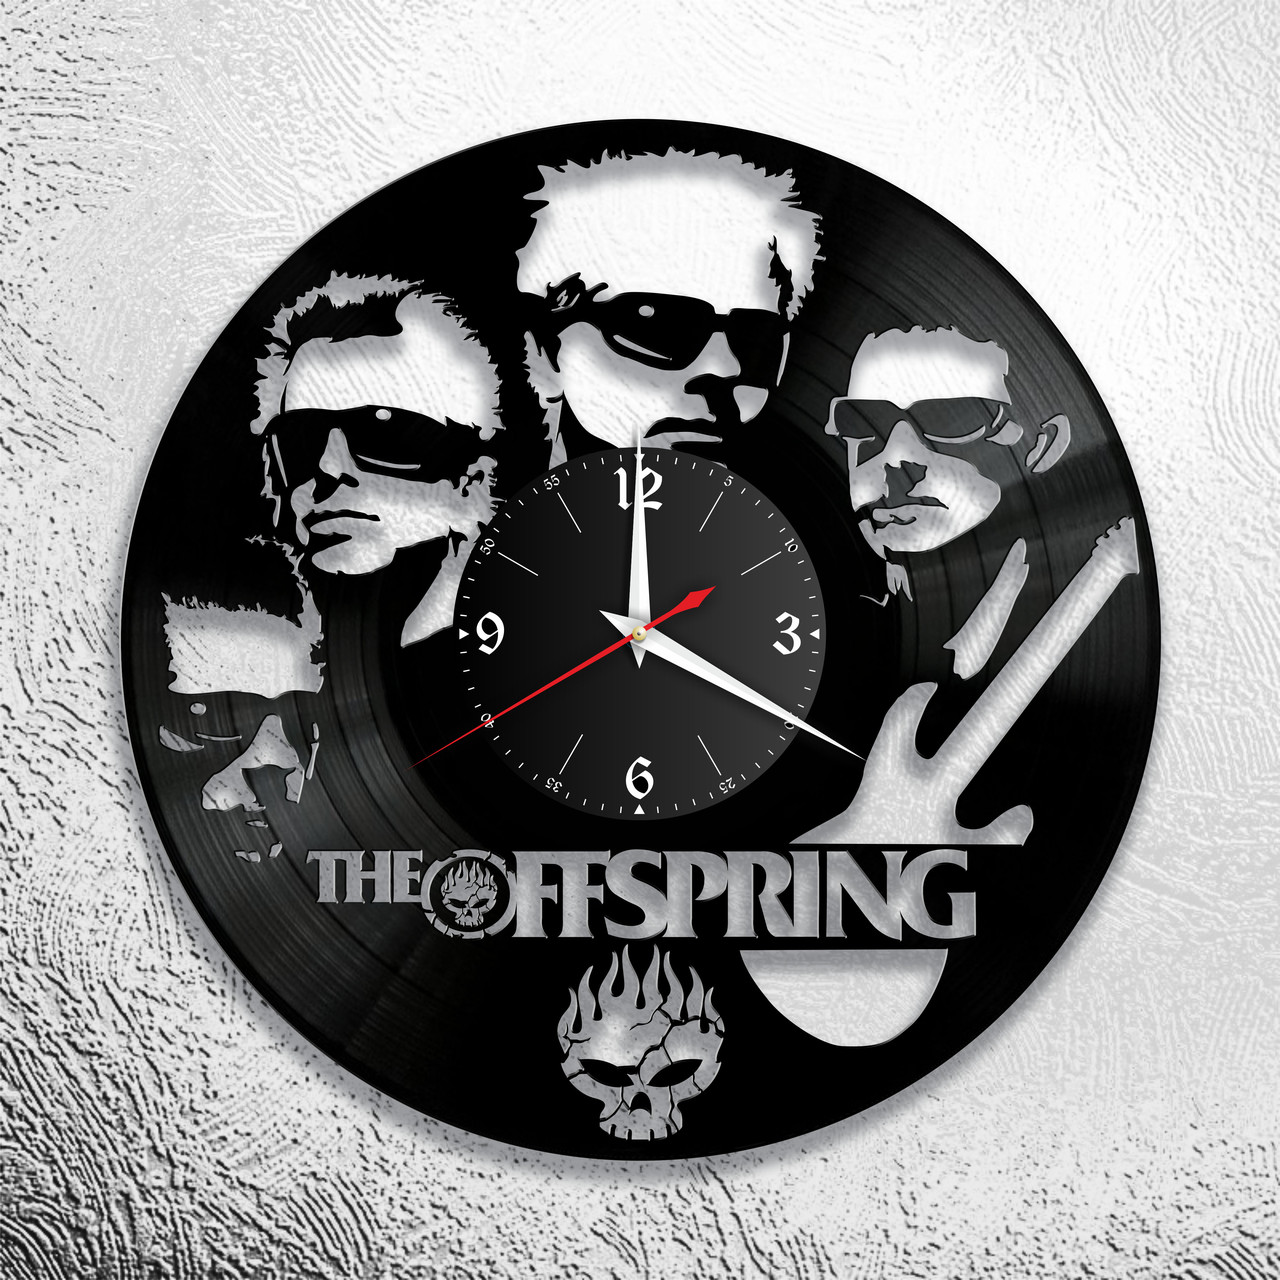 Часы из виниловой пластинки " The Offspring " версия 1, фото 1